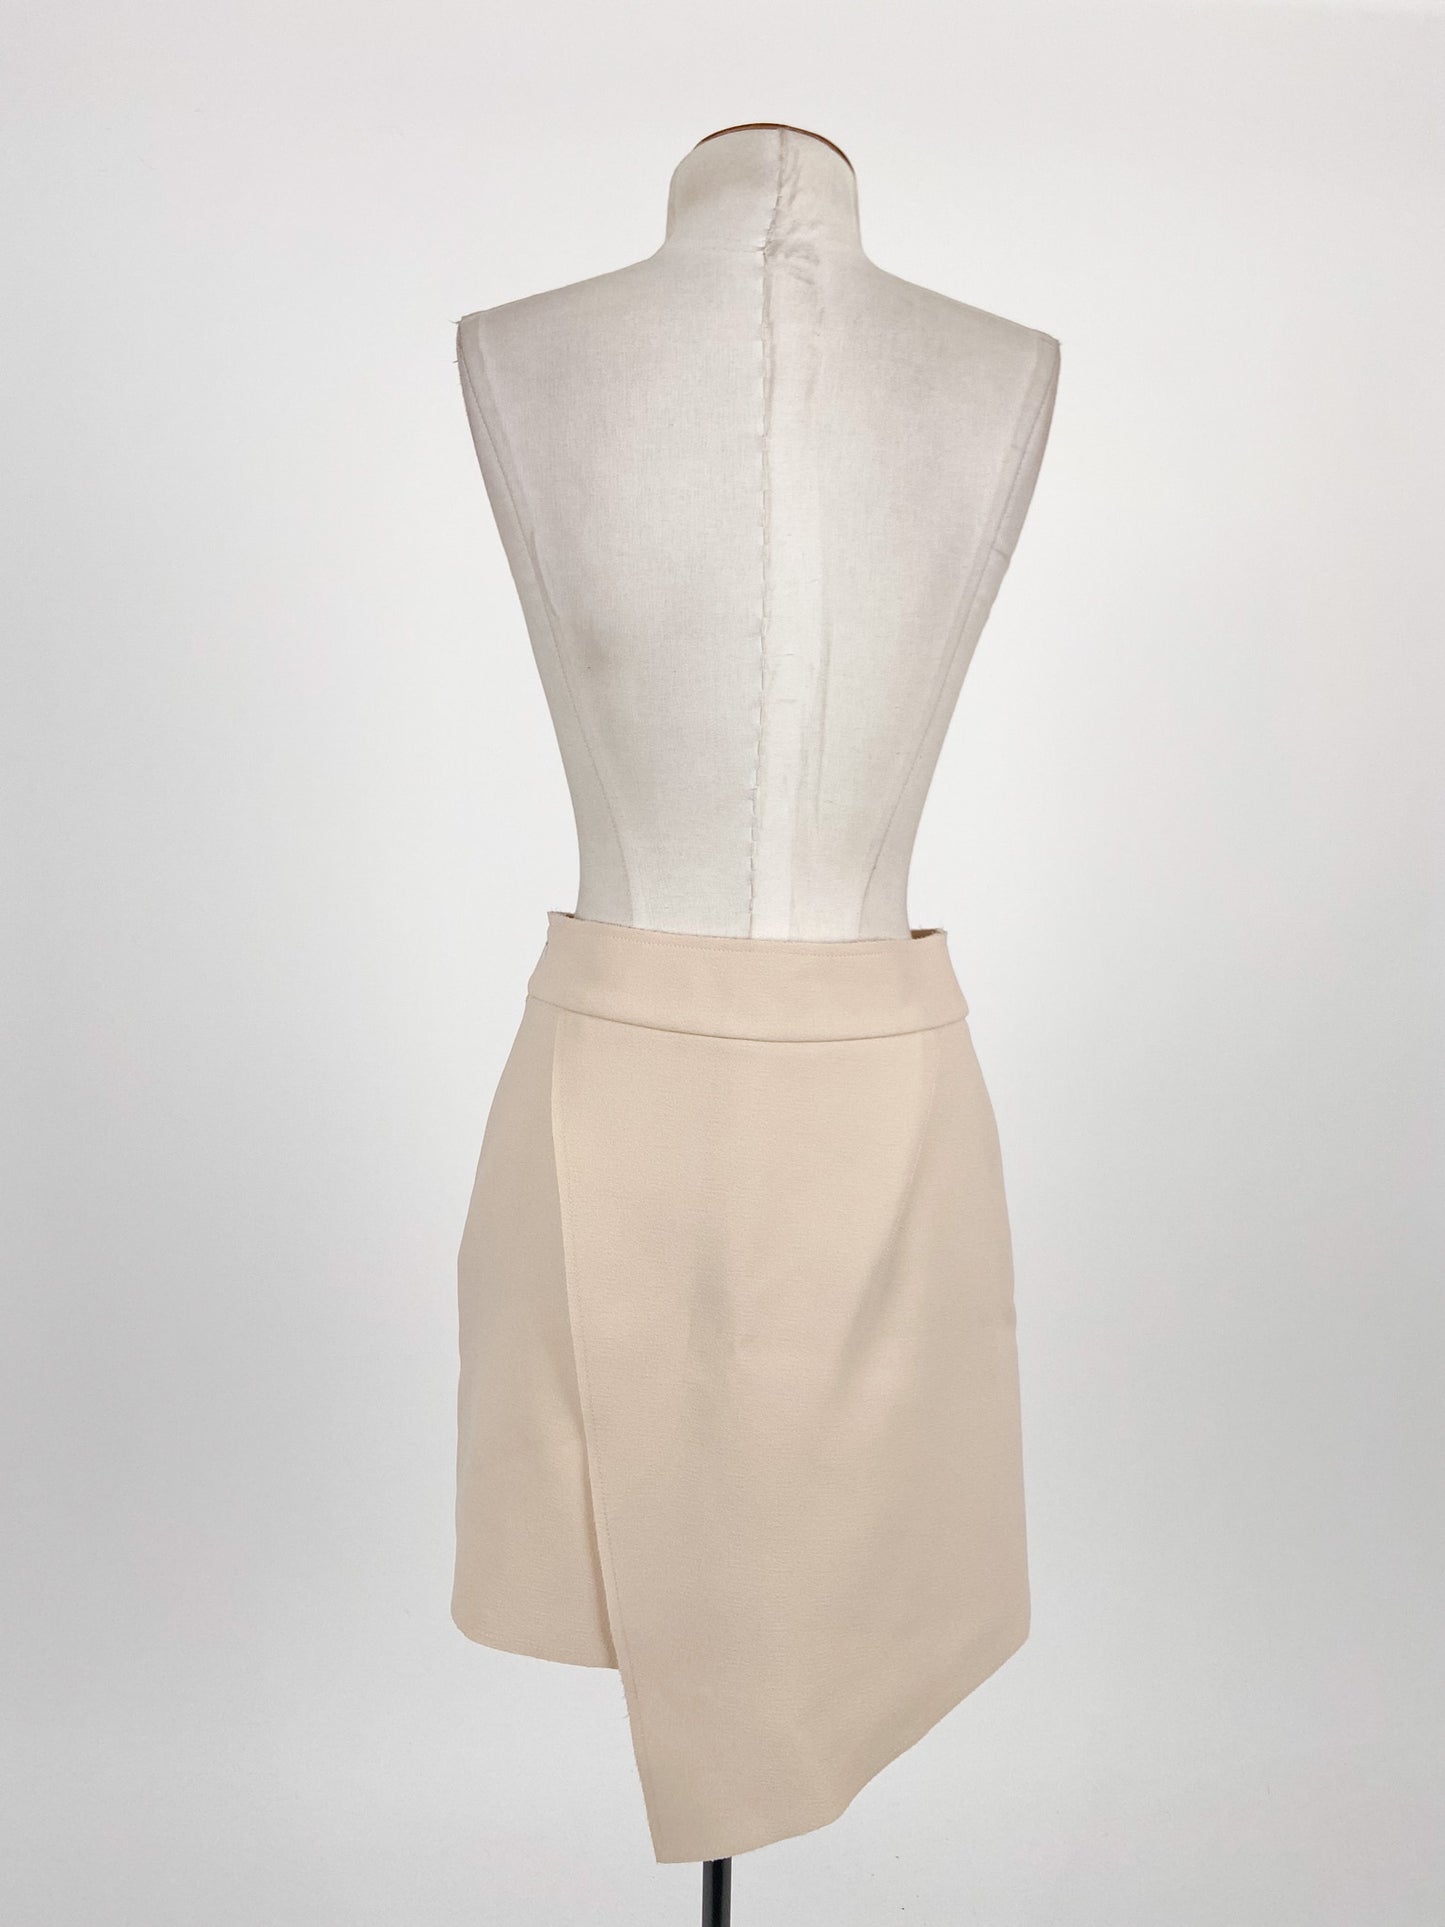 Topshop | Beige Workwear Skirt | Size 6